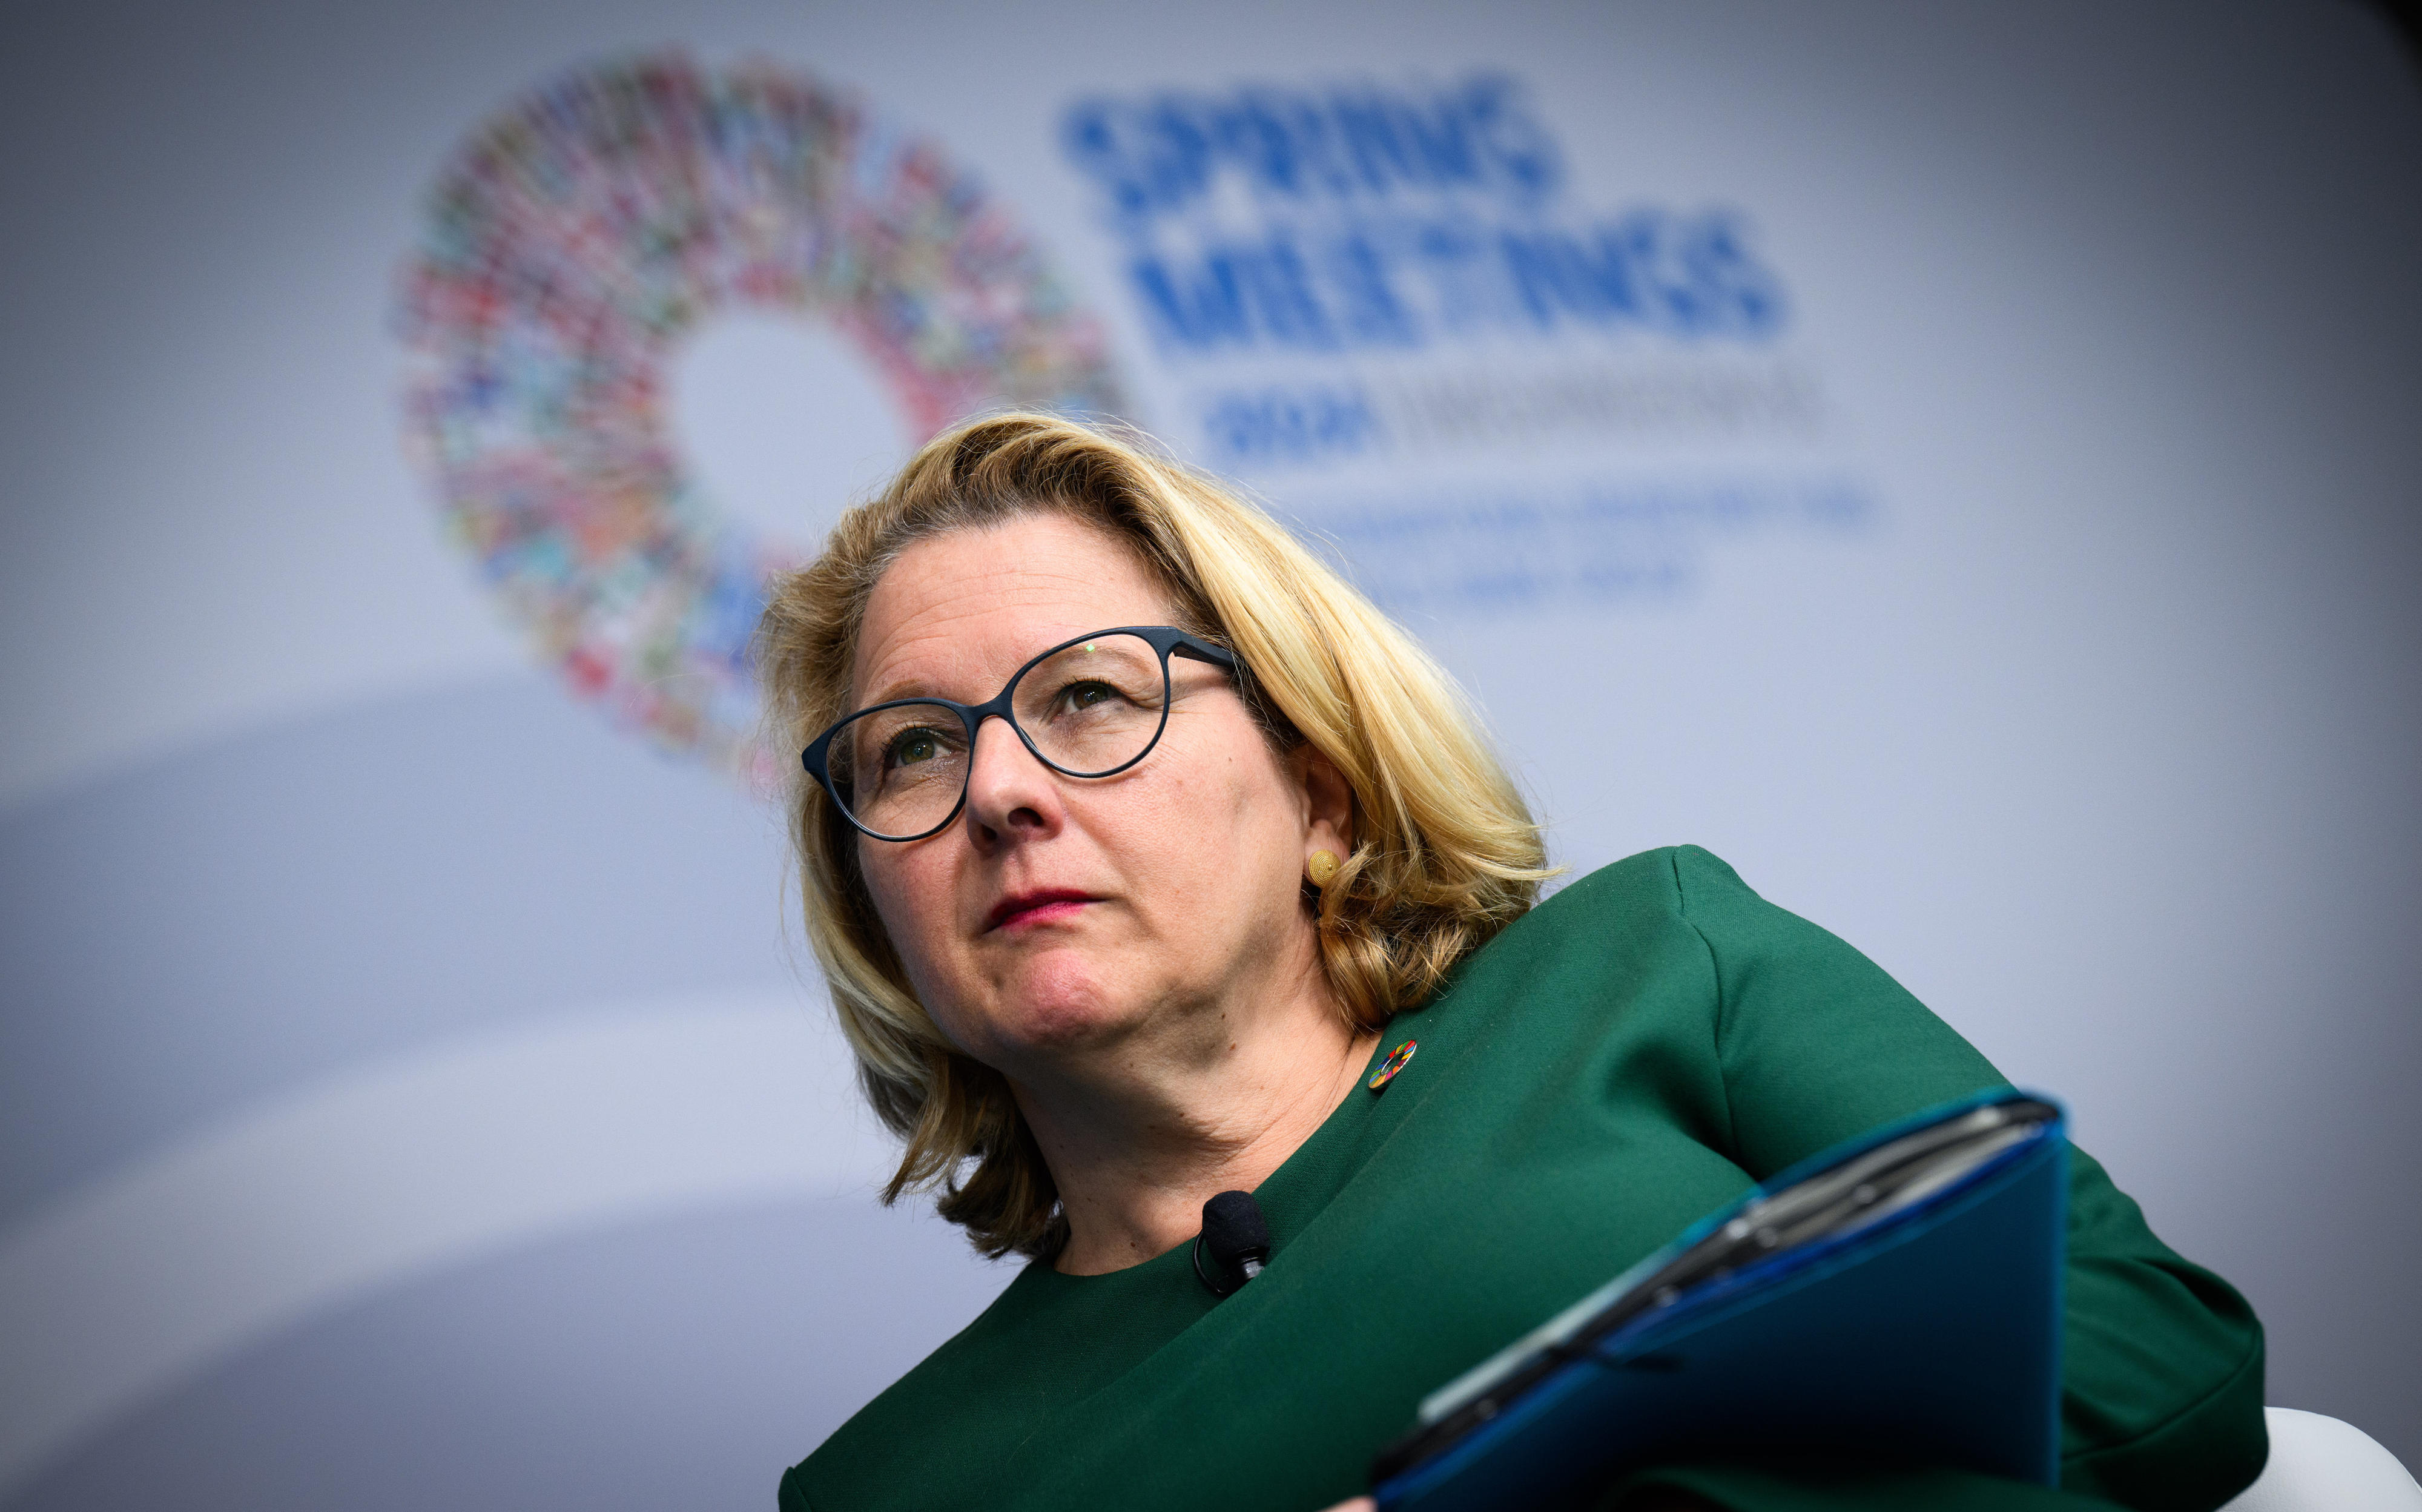 Svenja Schulze, Bundesministerin für wirtschaftliche Zusammenarbeit und Entwicklung, bei einer Podiumsdiskussion während der Frühjahrstagung der Weltbank 